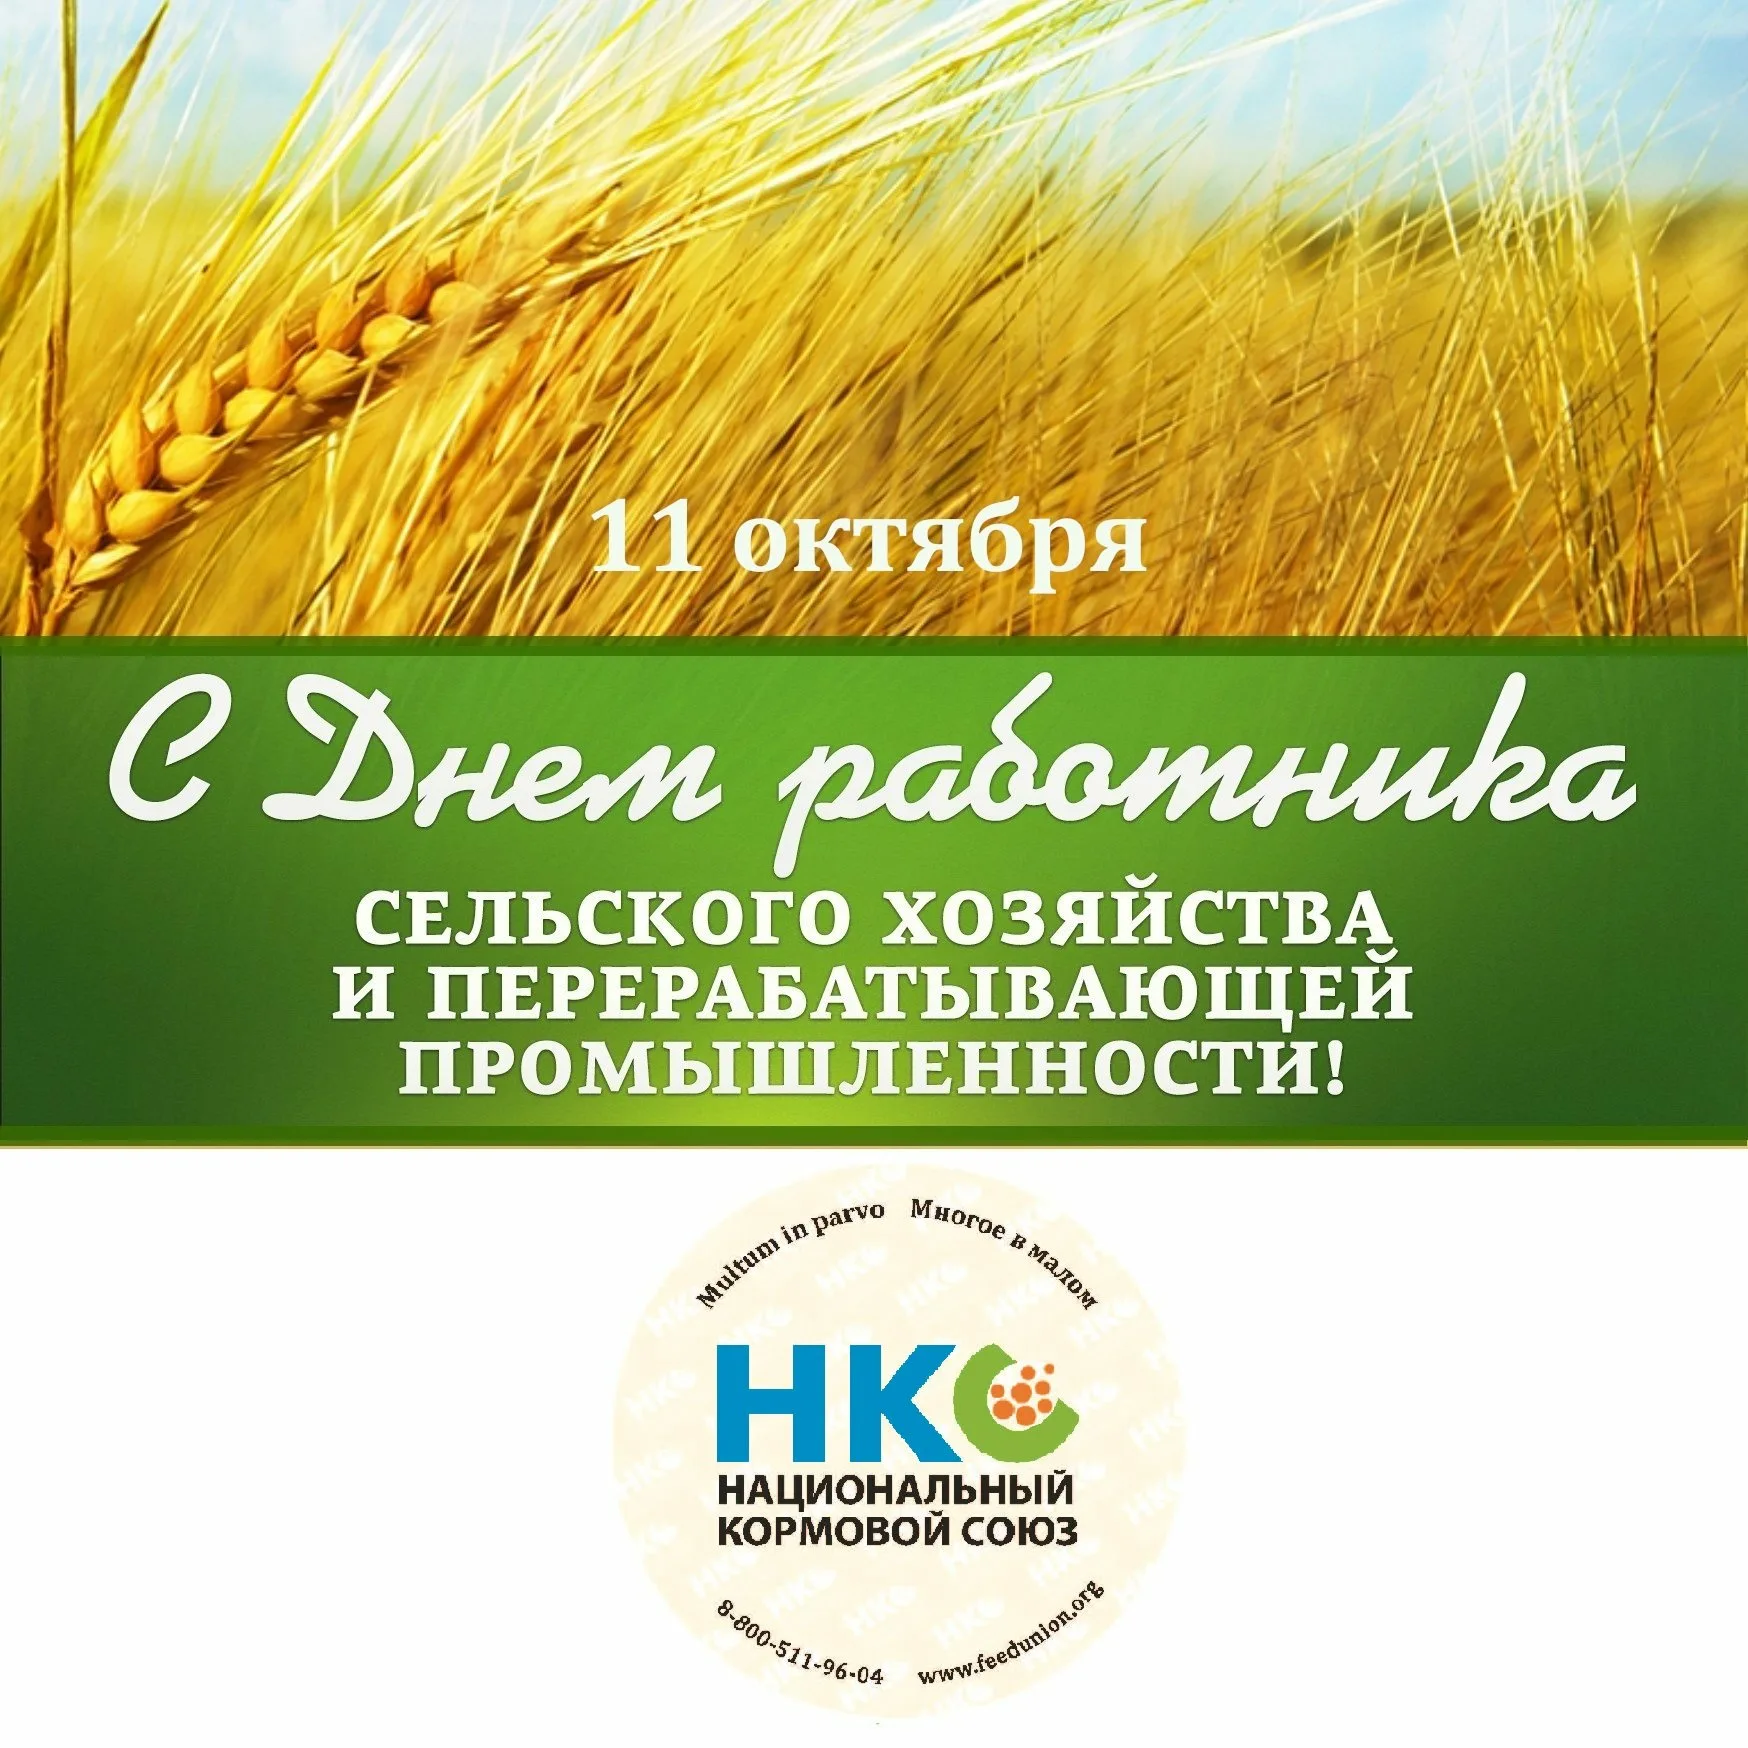 Фото Поздравления с днем работников сельского хозяйства Украины #79